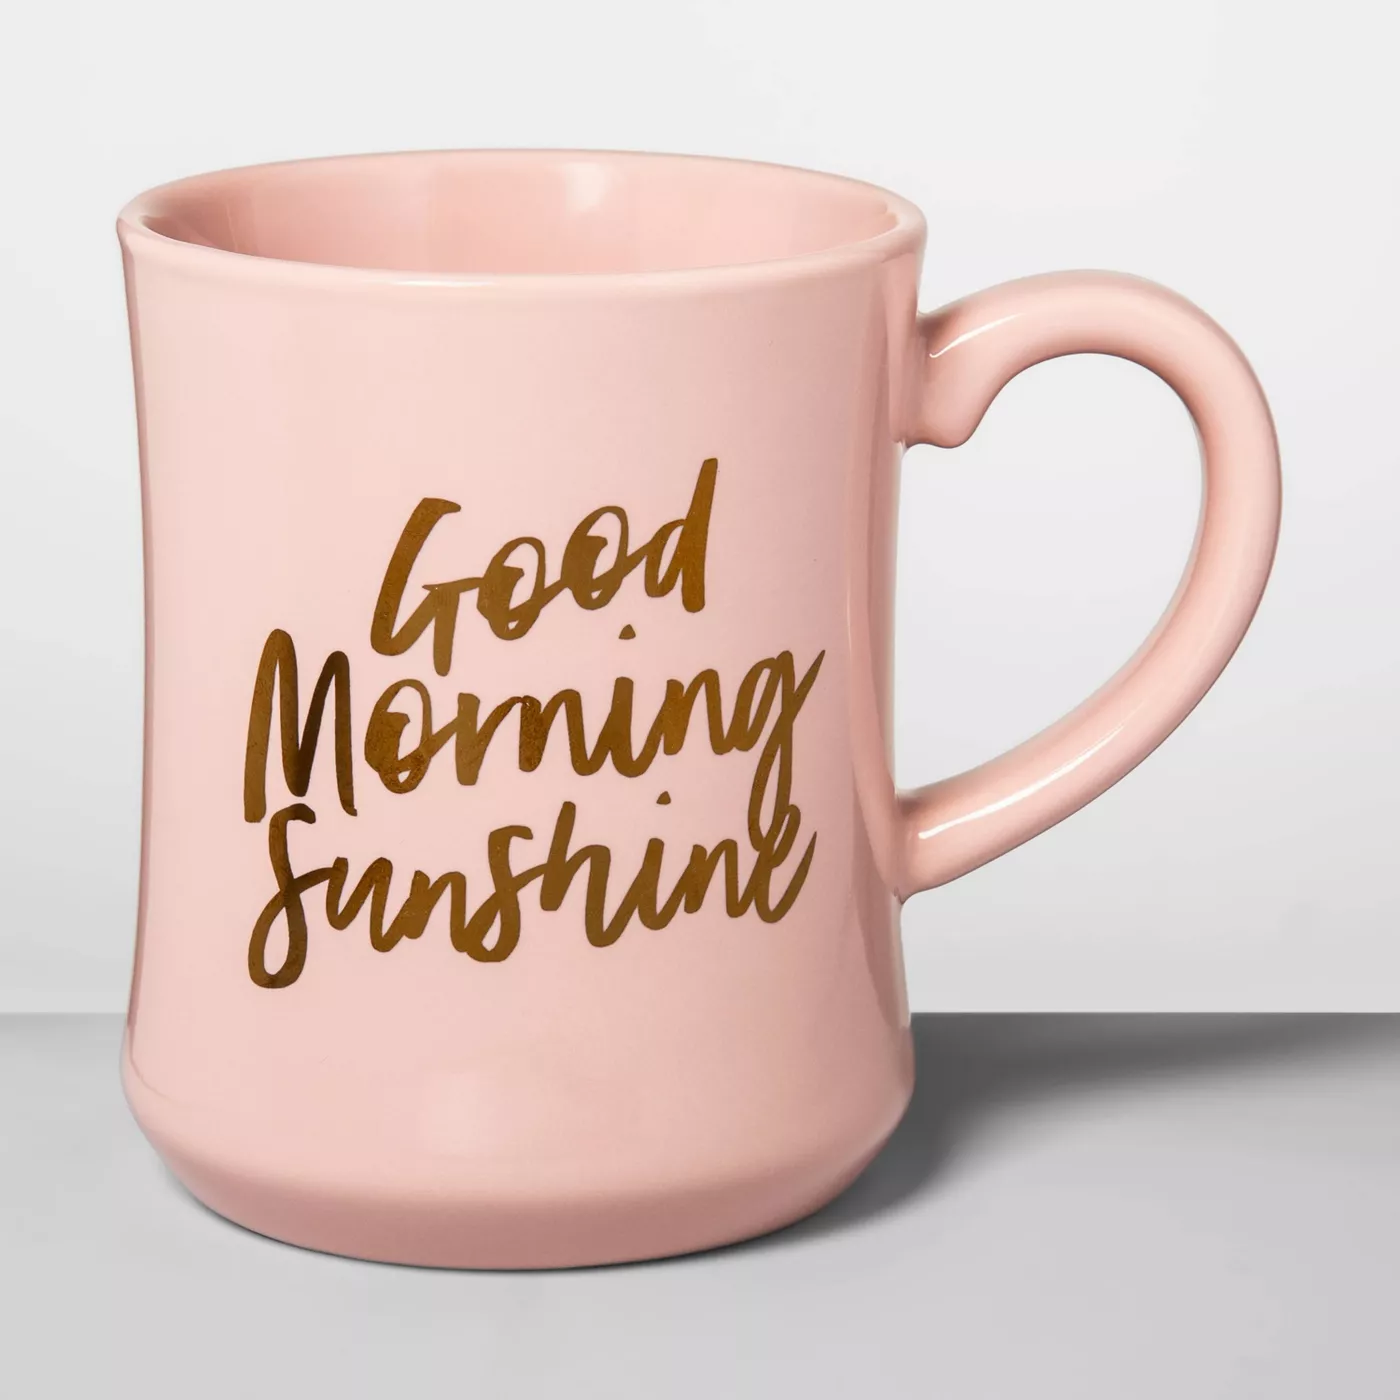 15oz Stoneware Good Morning Diner Mug Light Pink - Opalhouse™ - image 1 of 9